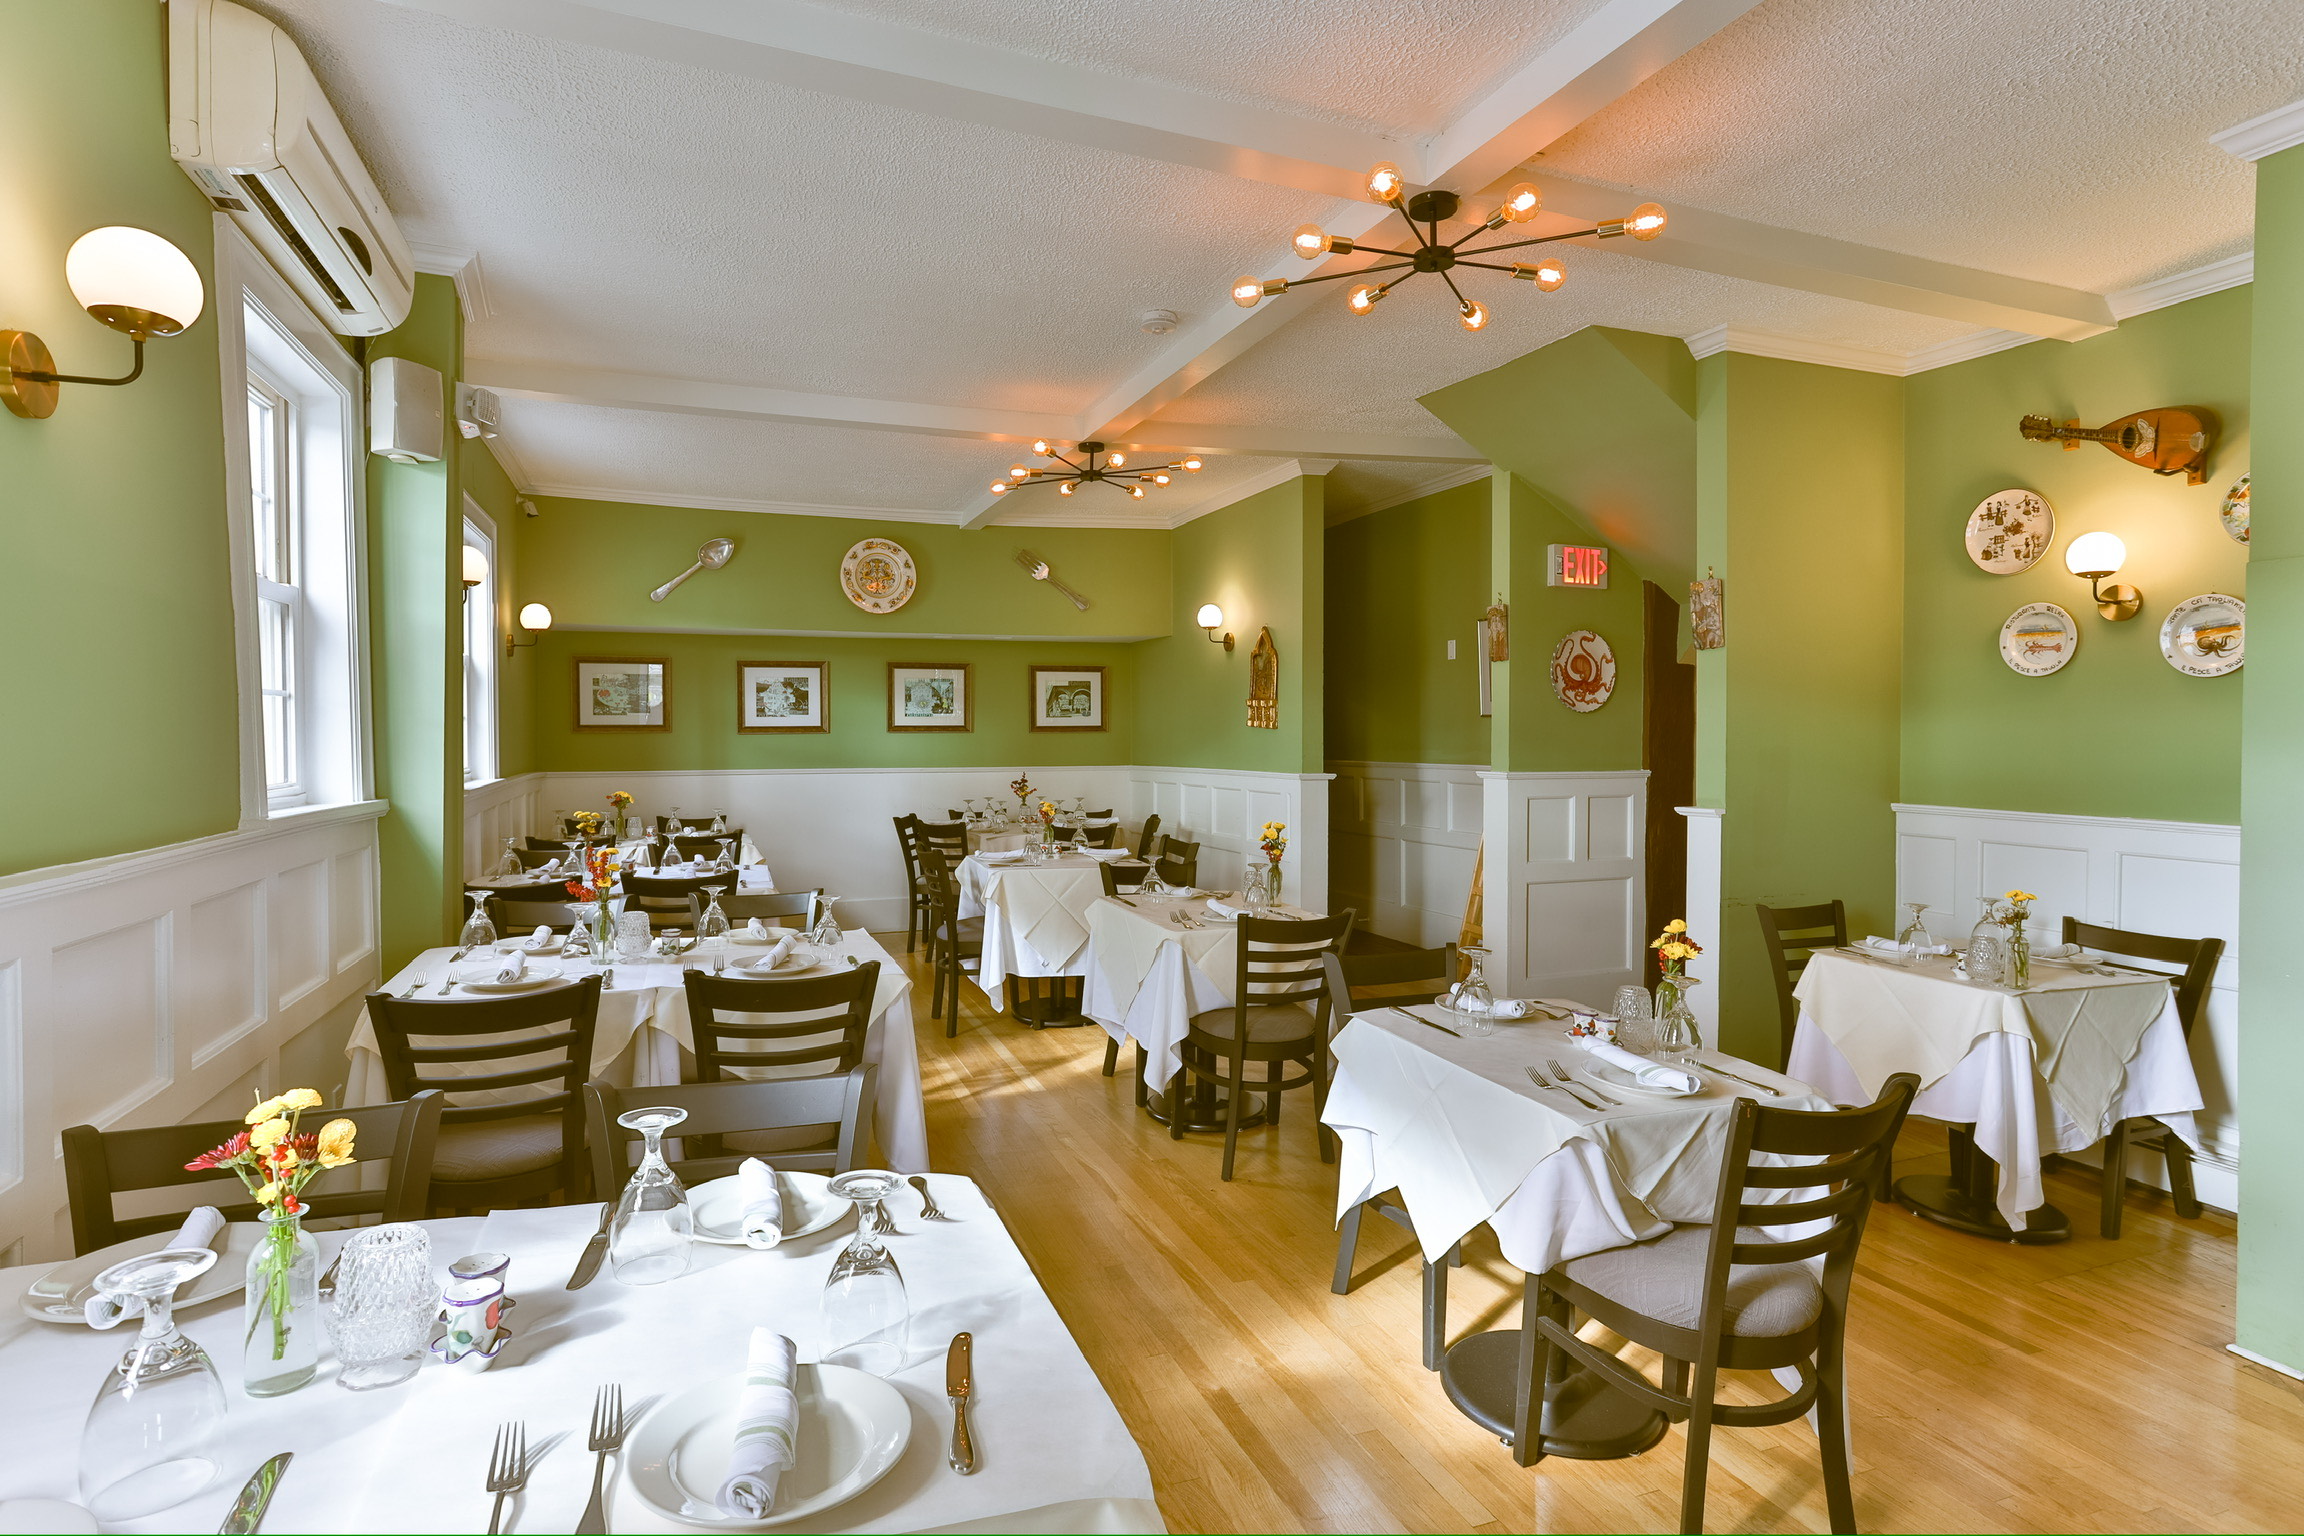 (PHOTO: The cozy, inviting interior of Rosa's Cucina Italiana.)